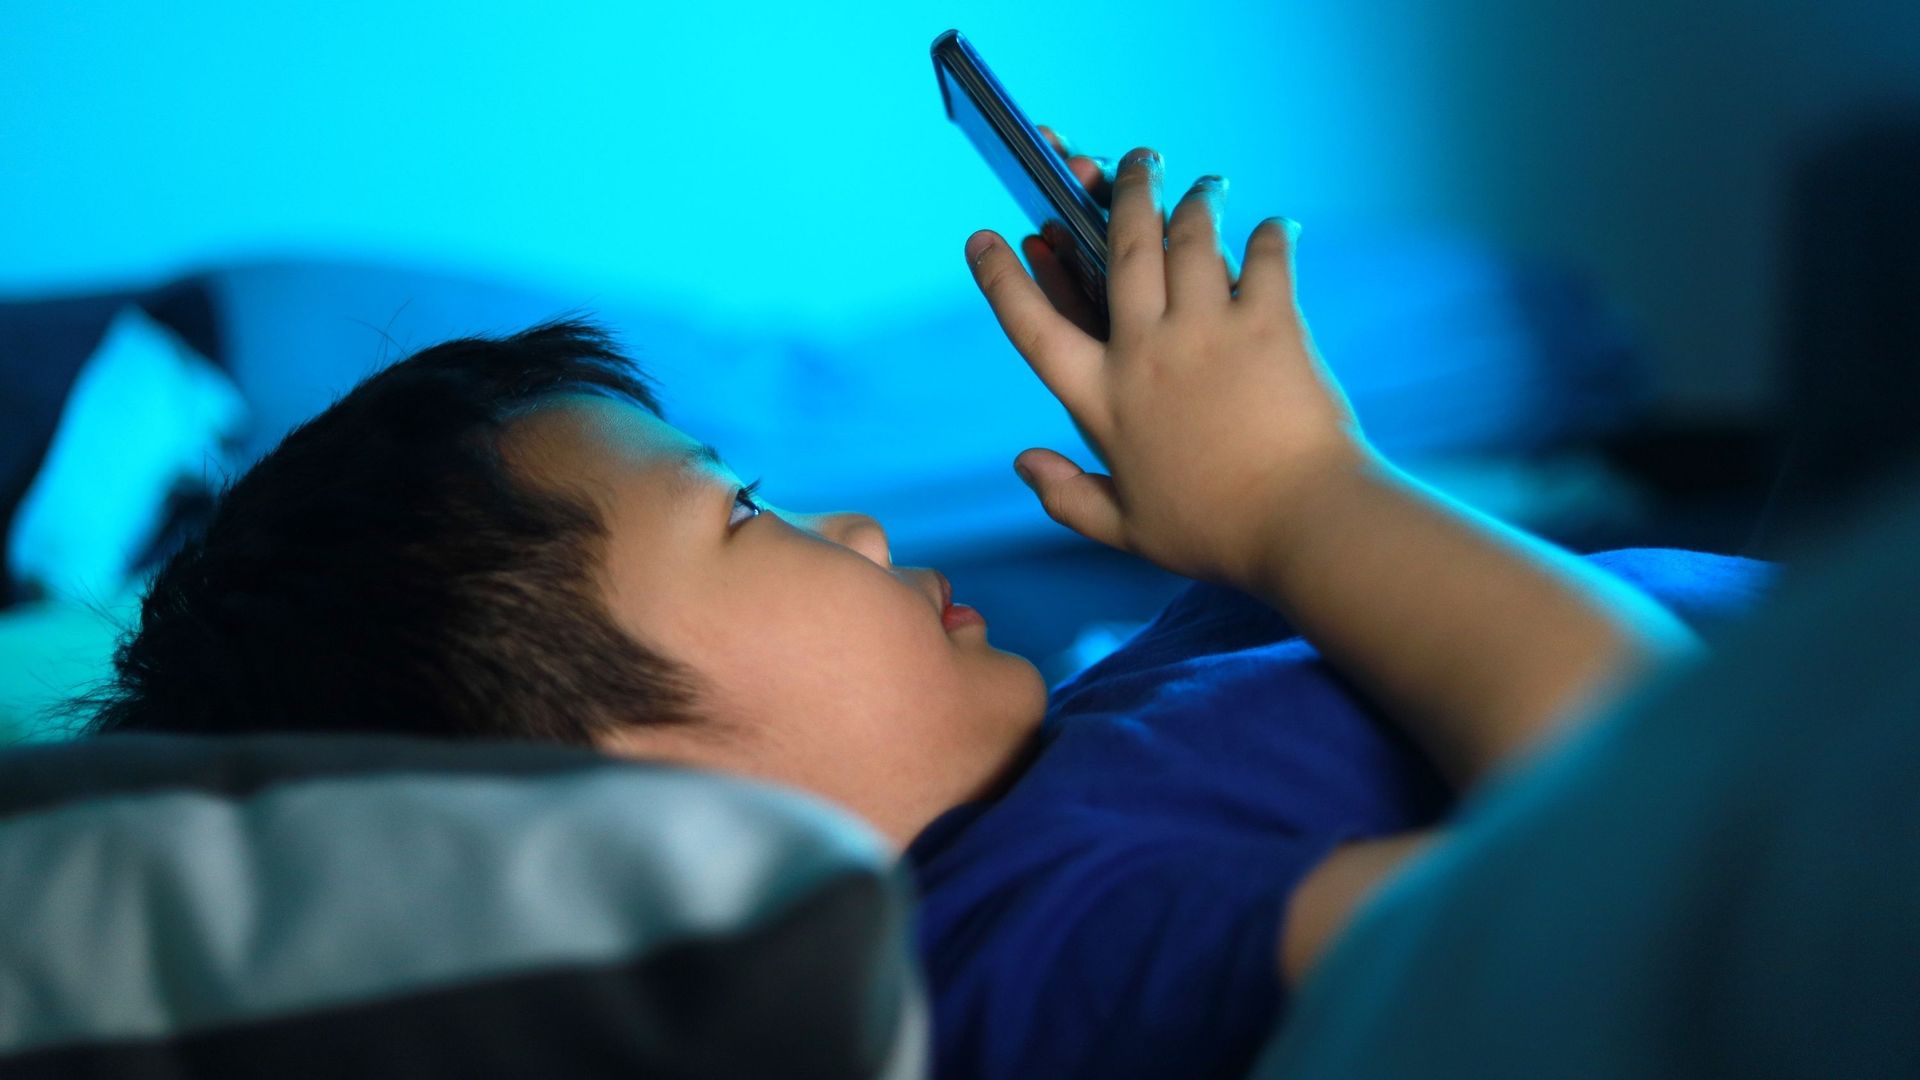 Garçon expose ses yeux à la lumière bleue de l’écran de son smartphone dans son lit.